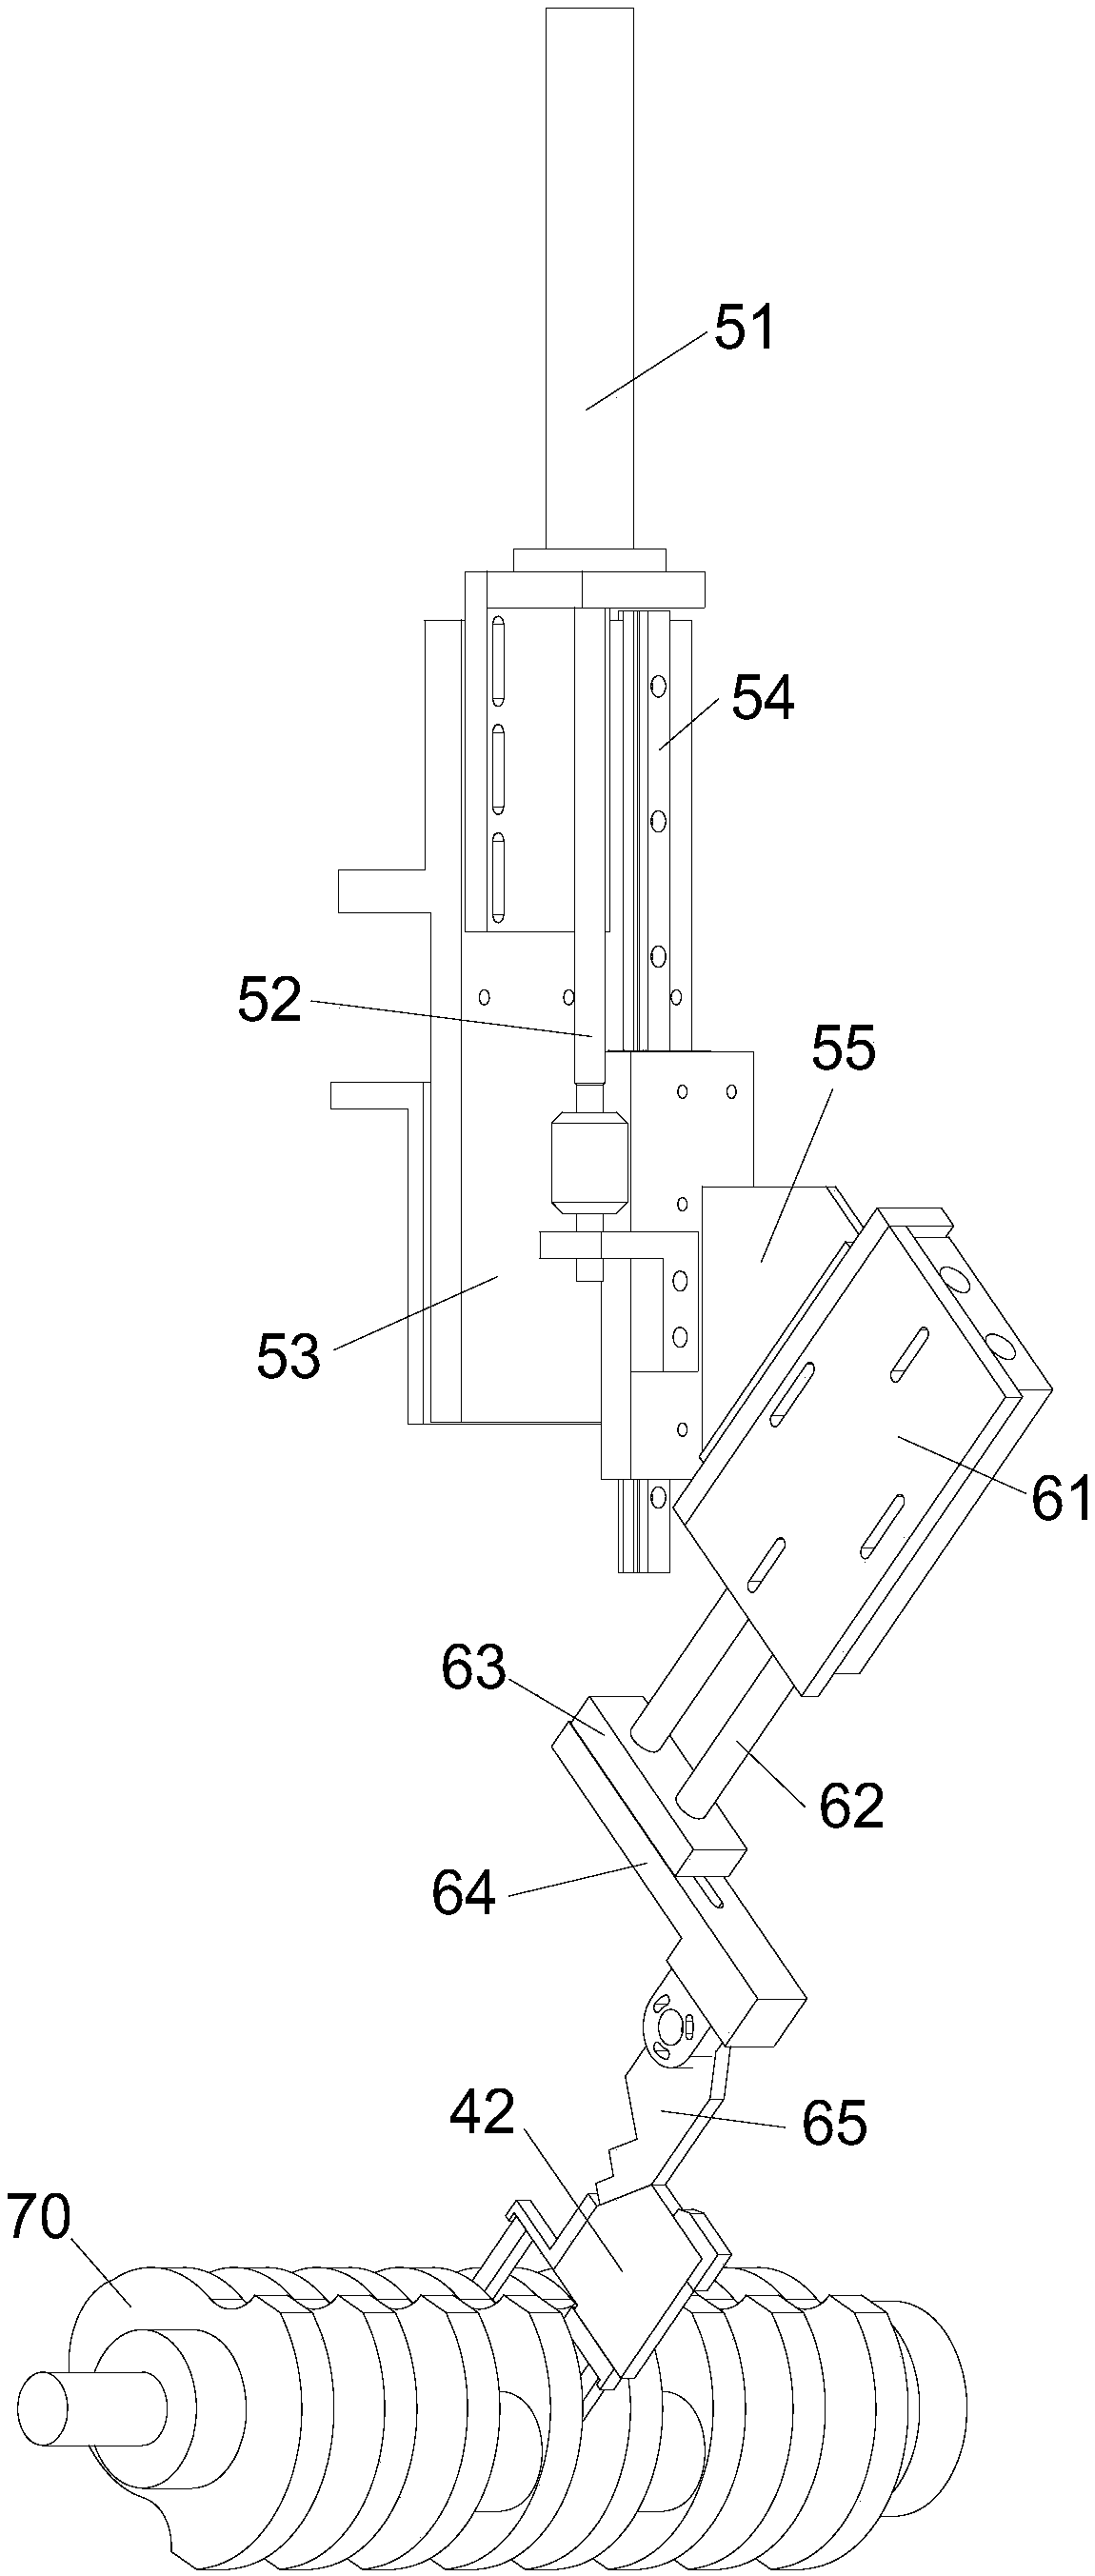 Online detection mechanism of crankshaft grinding machines